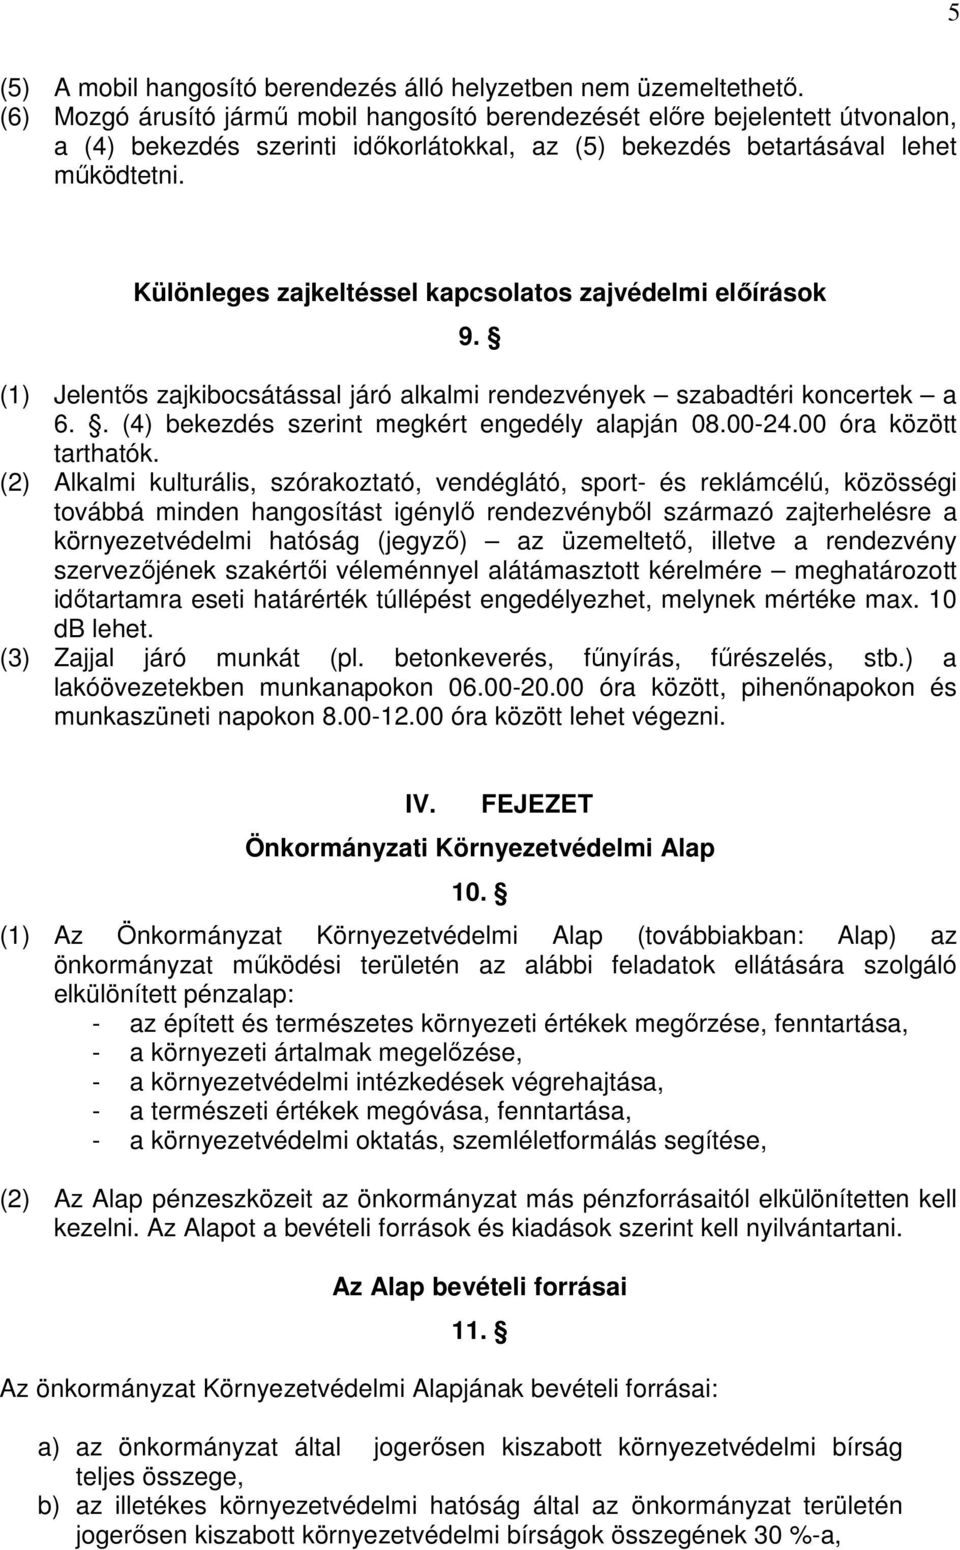 Különleges zajkeltéssel kapcsolatos zajvédelmi elıírások 9. (1) Jelentıs zajkibocsátással járó alkalmi rendezvények szabadtéri koncertek a 6.. (4) bekezdés szerint megkért engedély alapján 08.00-24.